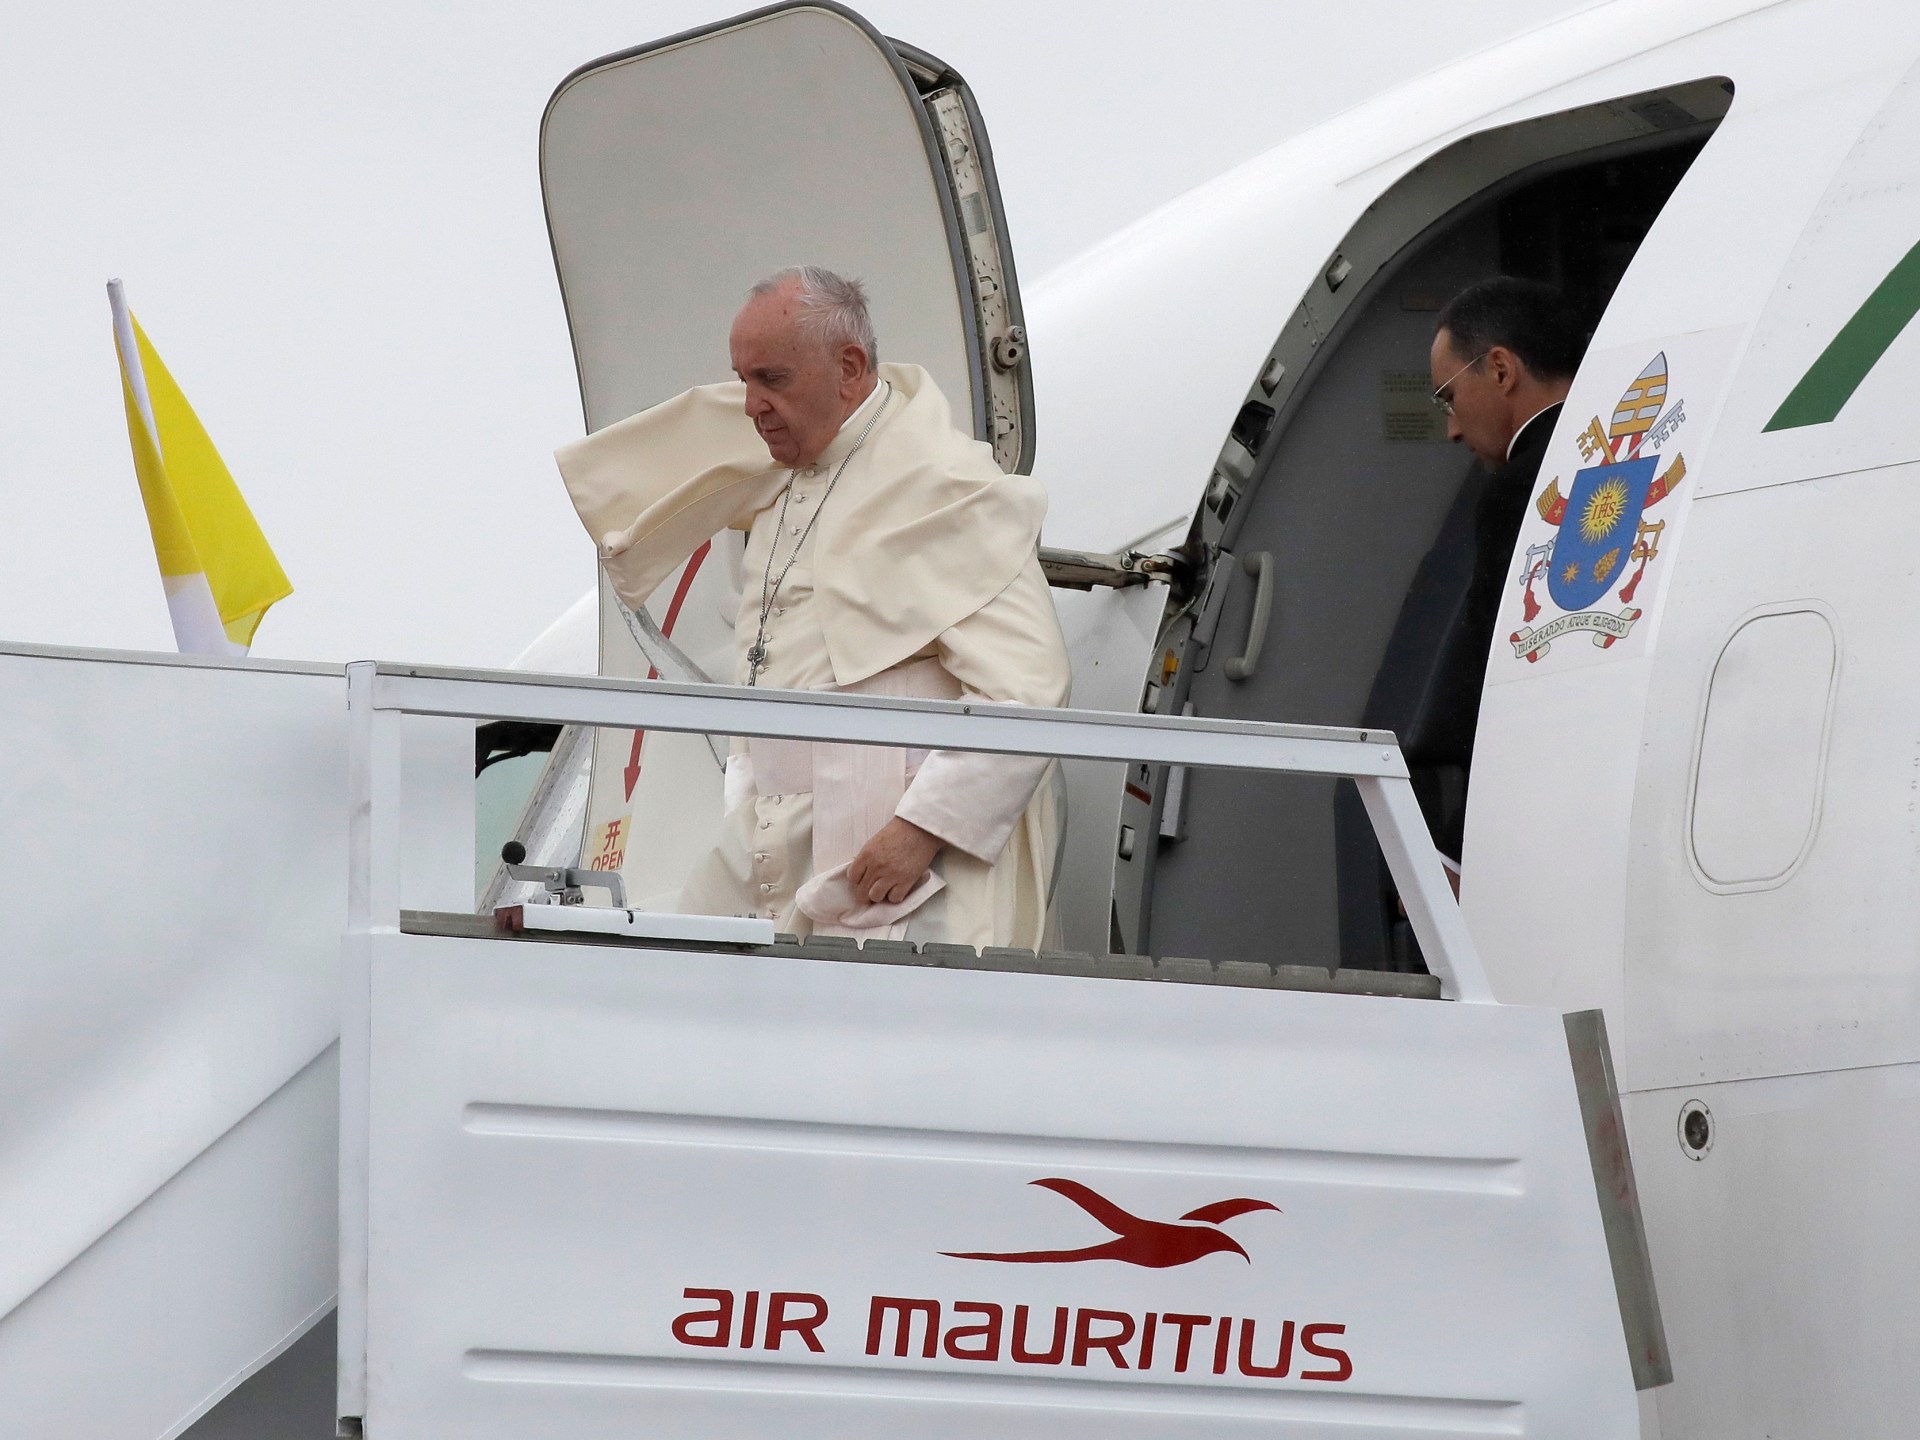 Des rescapés du conflit rencontreront le pape François lors de son voyage en RD Congo |  Nouvelles sur les conflits